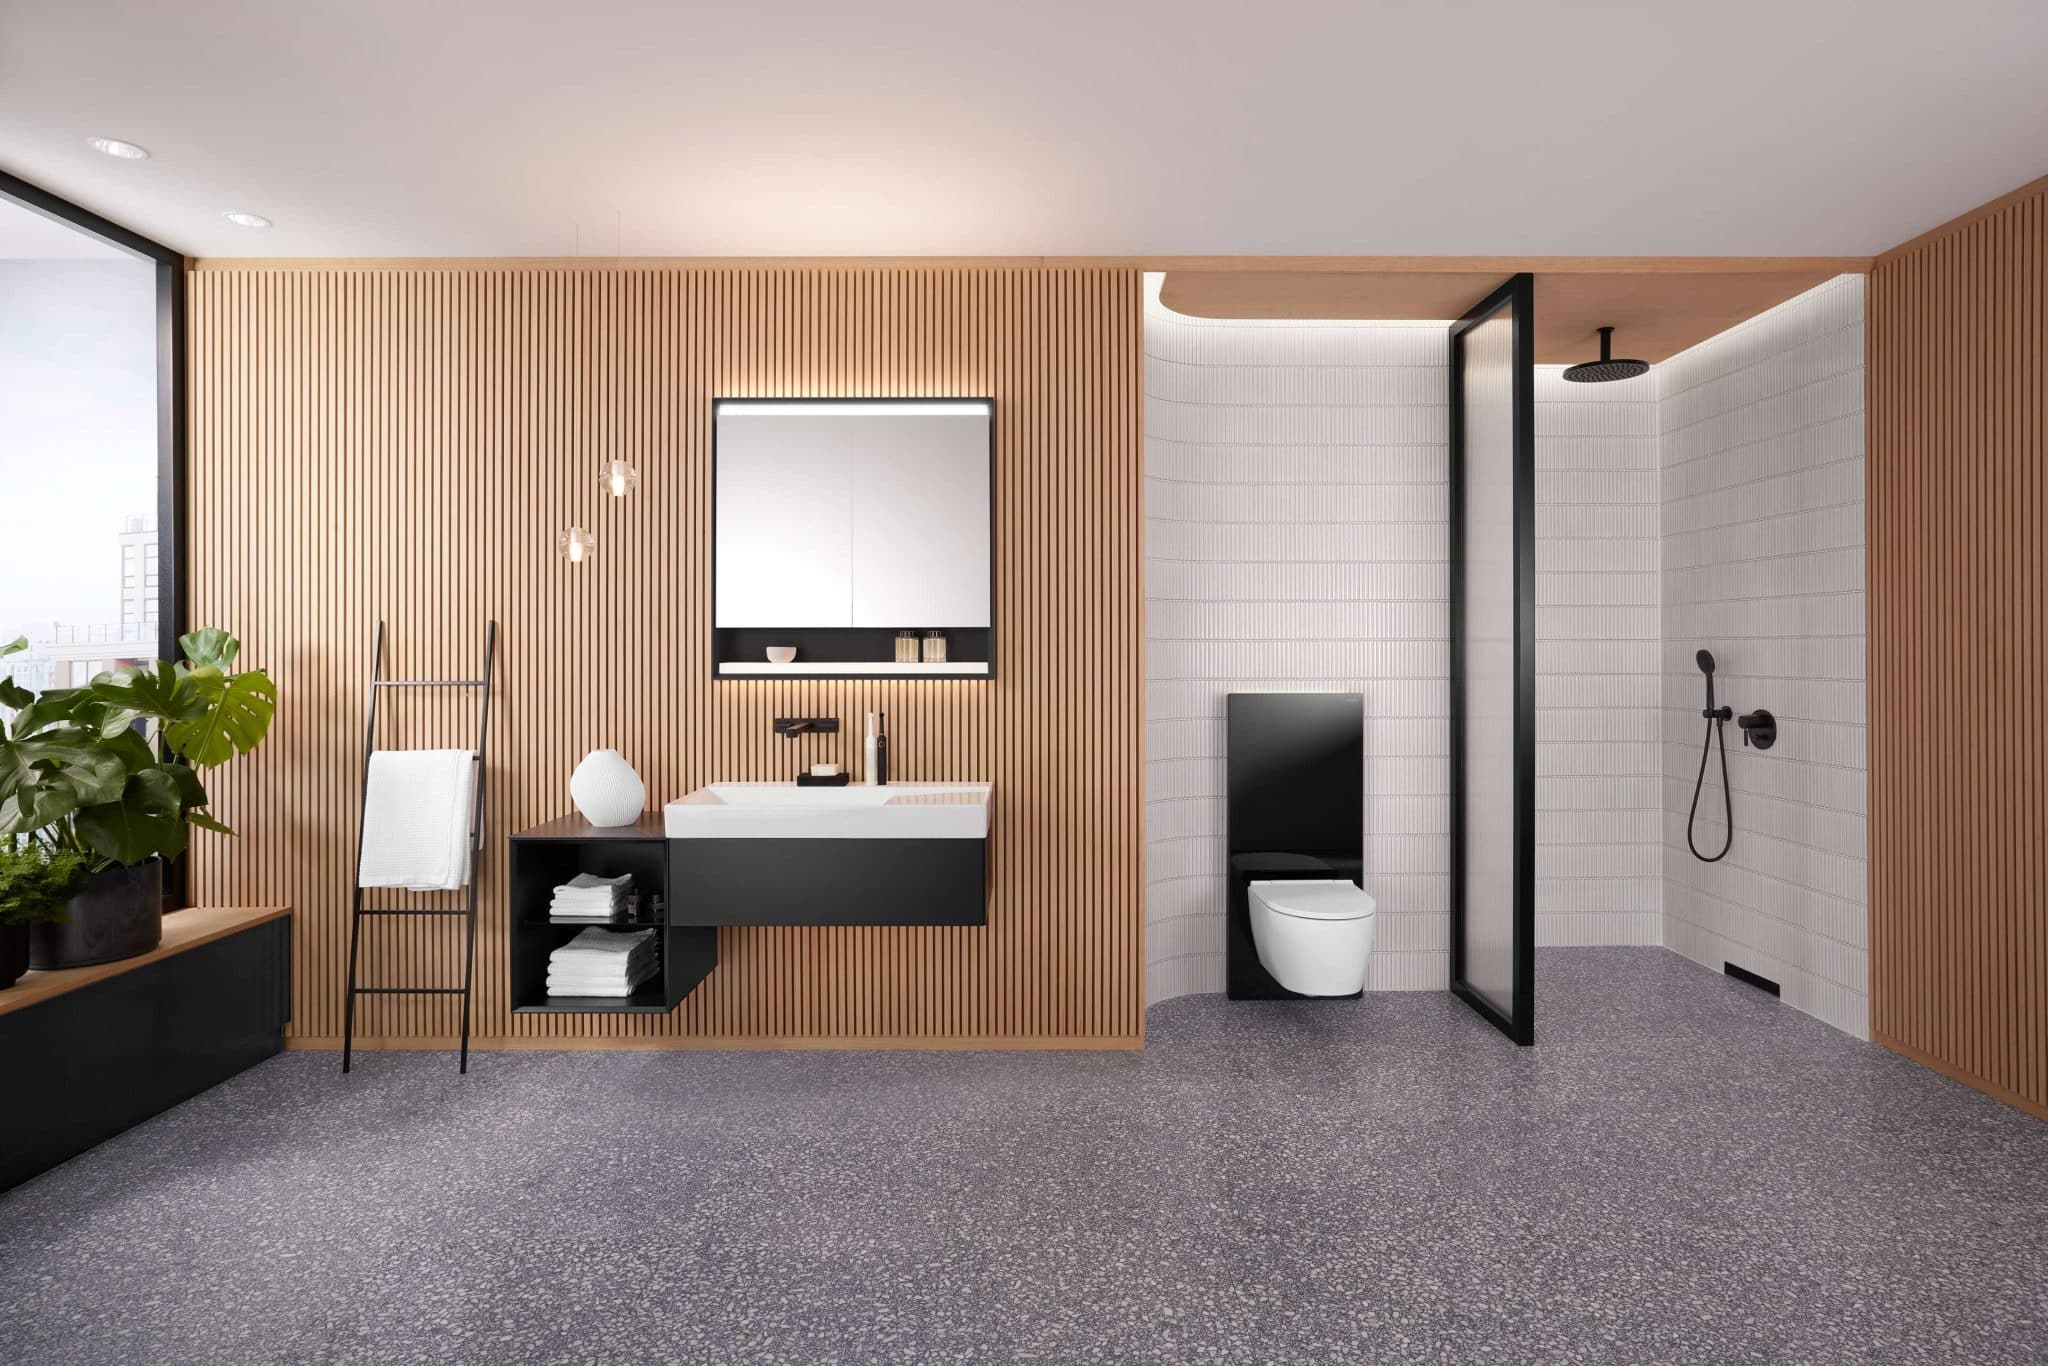 Kombiniranje materialov: kopalnica kot prostor z osebno noto